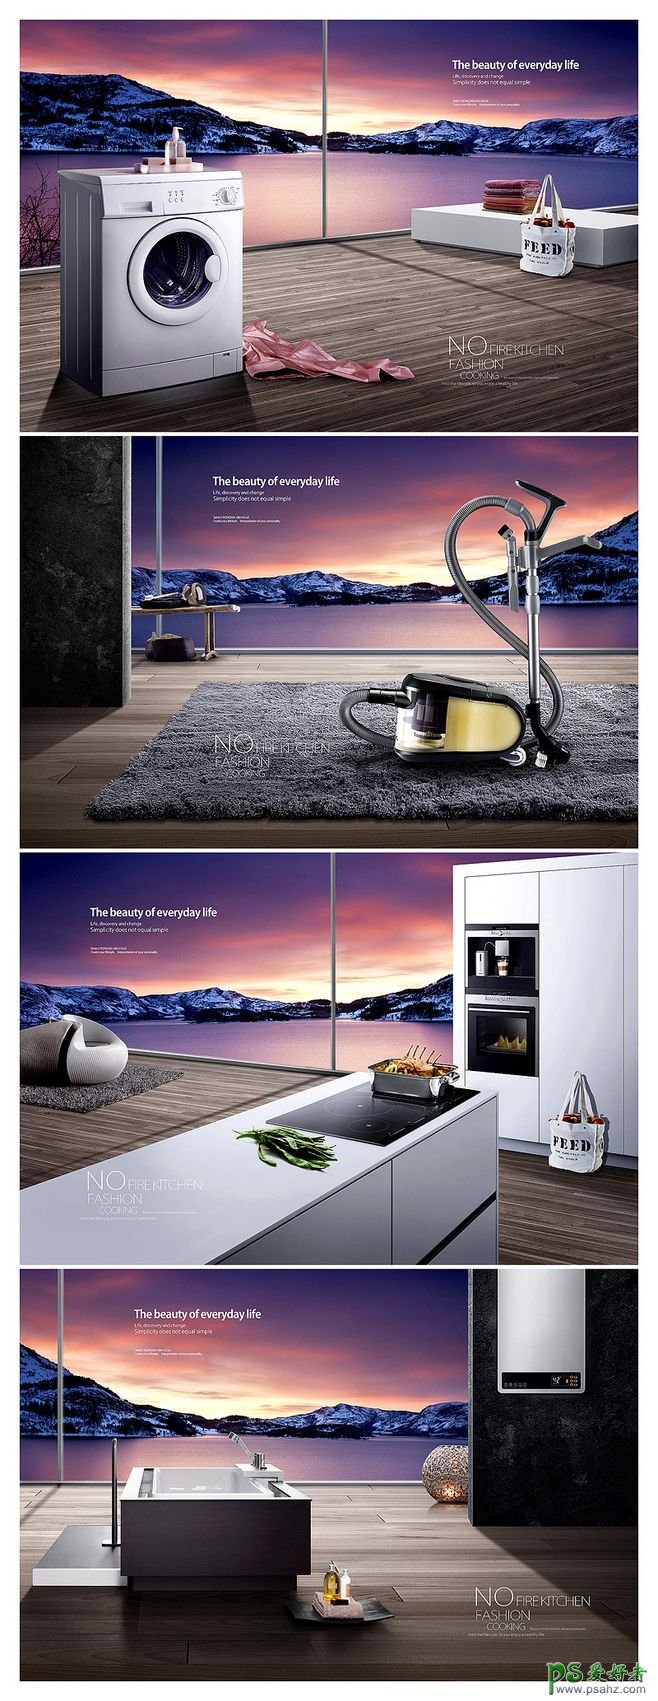 漂亮大气的电器广告设计 欣赏一组家用电器平面海报设计作品